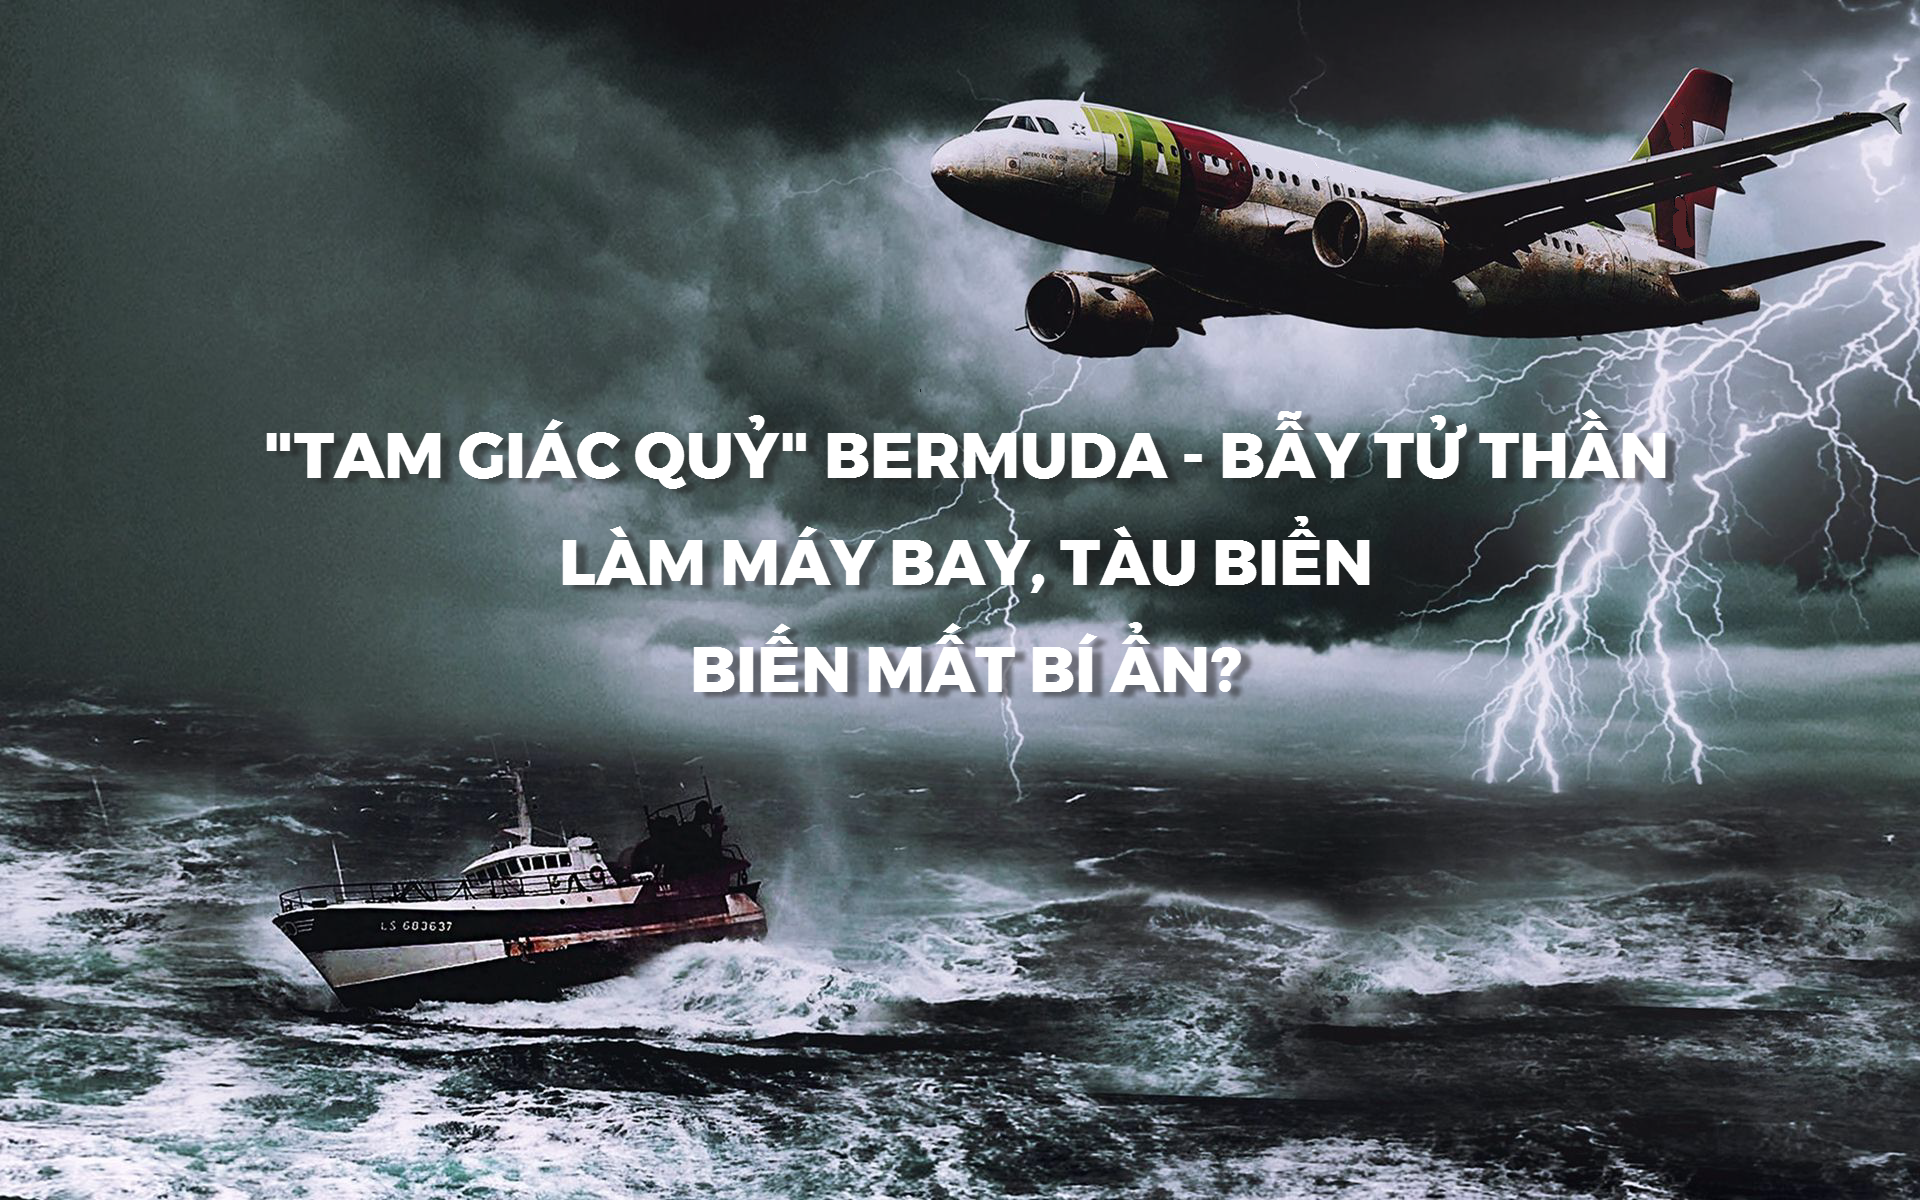 Giải mã bí ẩn "Tam giác quỷ" Bermuda - bẫy tử thần của máy bay, tàu biển